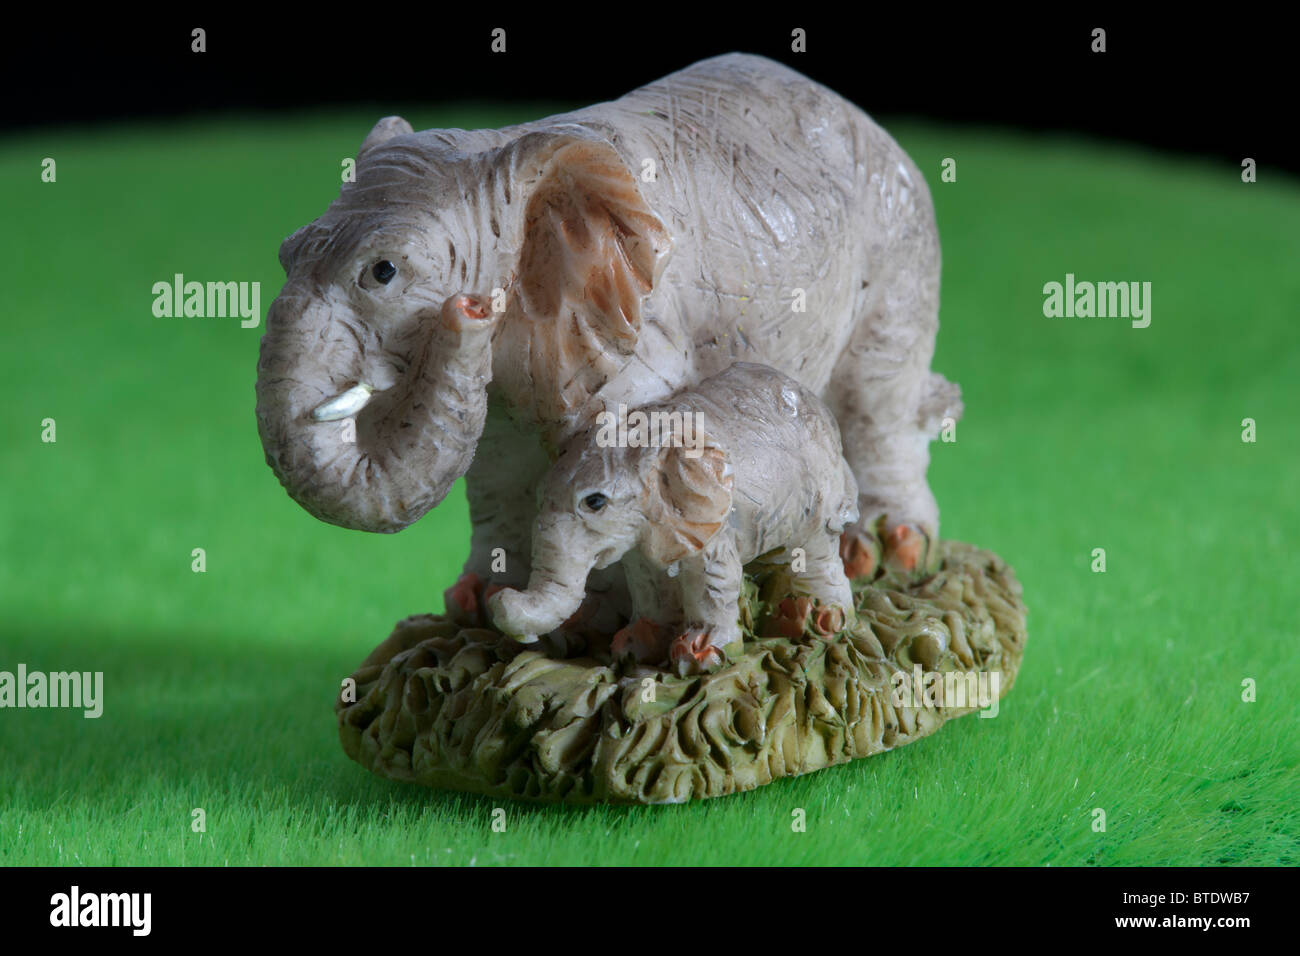 Toy elephant and baby elephant cub Stock Photo